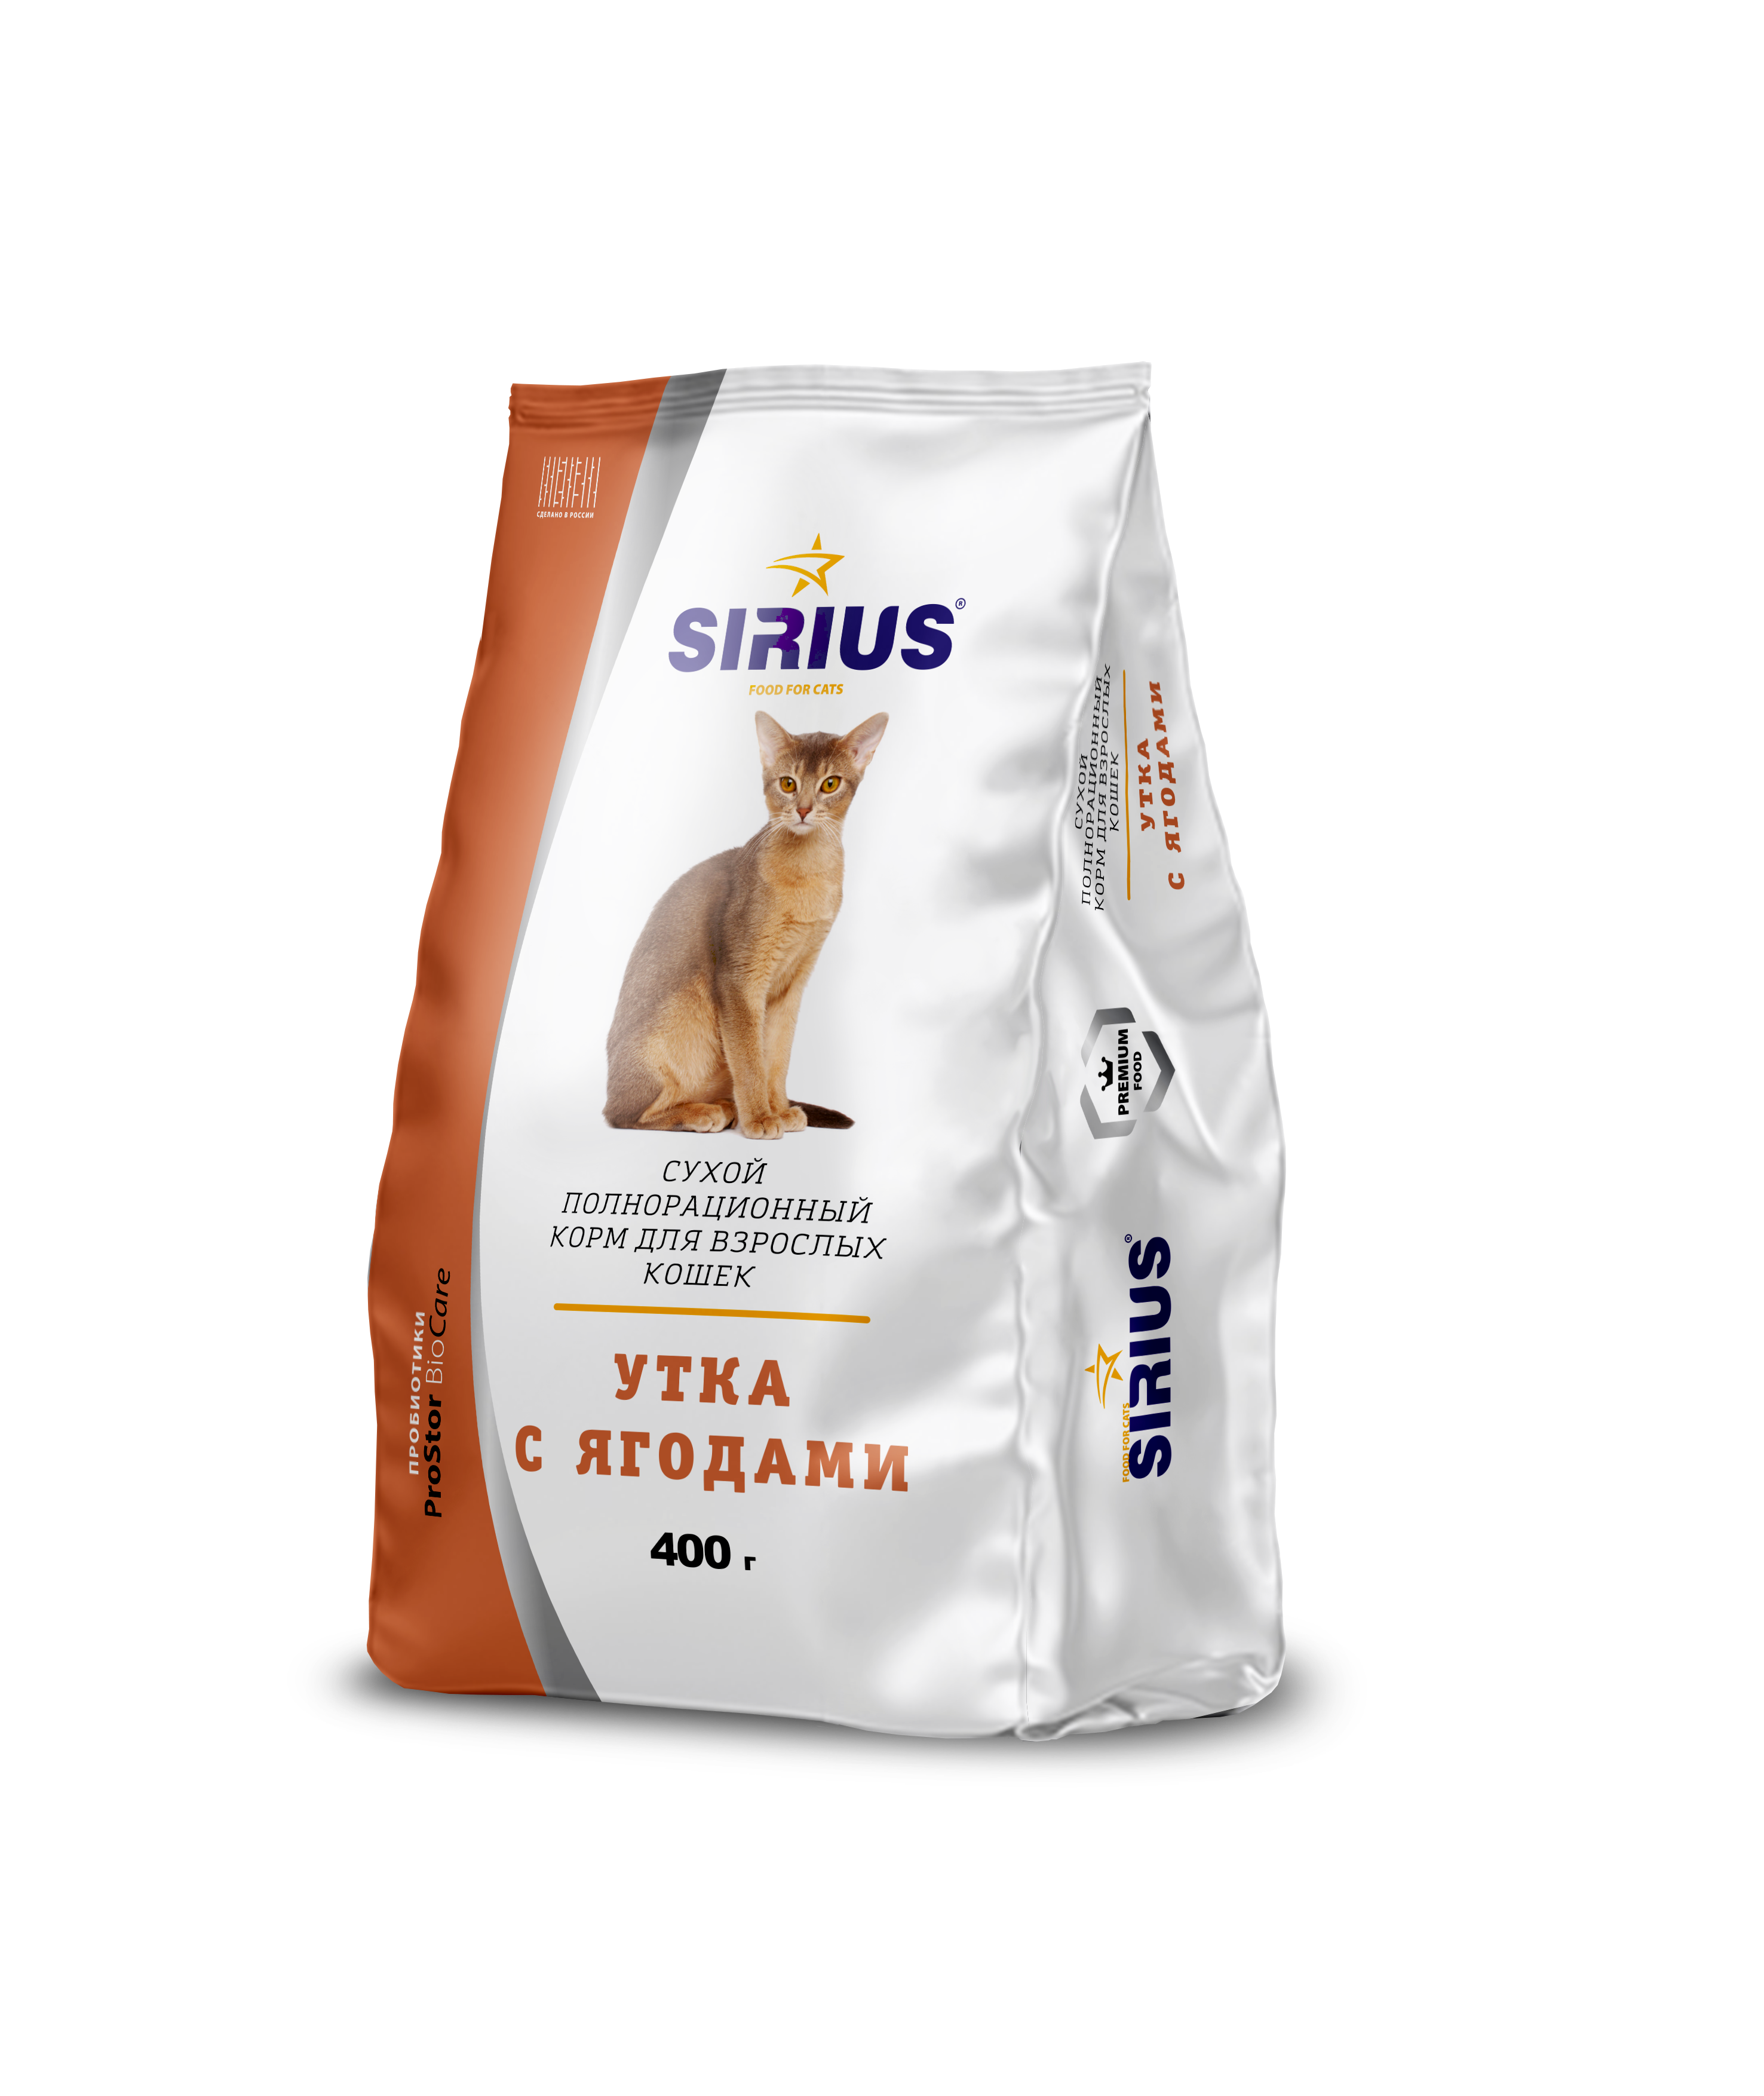 Сириус для кошек 10 кг купить. Сириус корм для кошек. Sirius корм для стерилизованных кошек. Сириус сух.д/кошек 1,5кг стерилизованных утка/клюква. Сириус корм для кошек 10 кг.